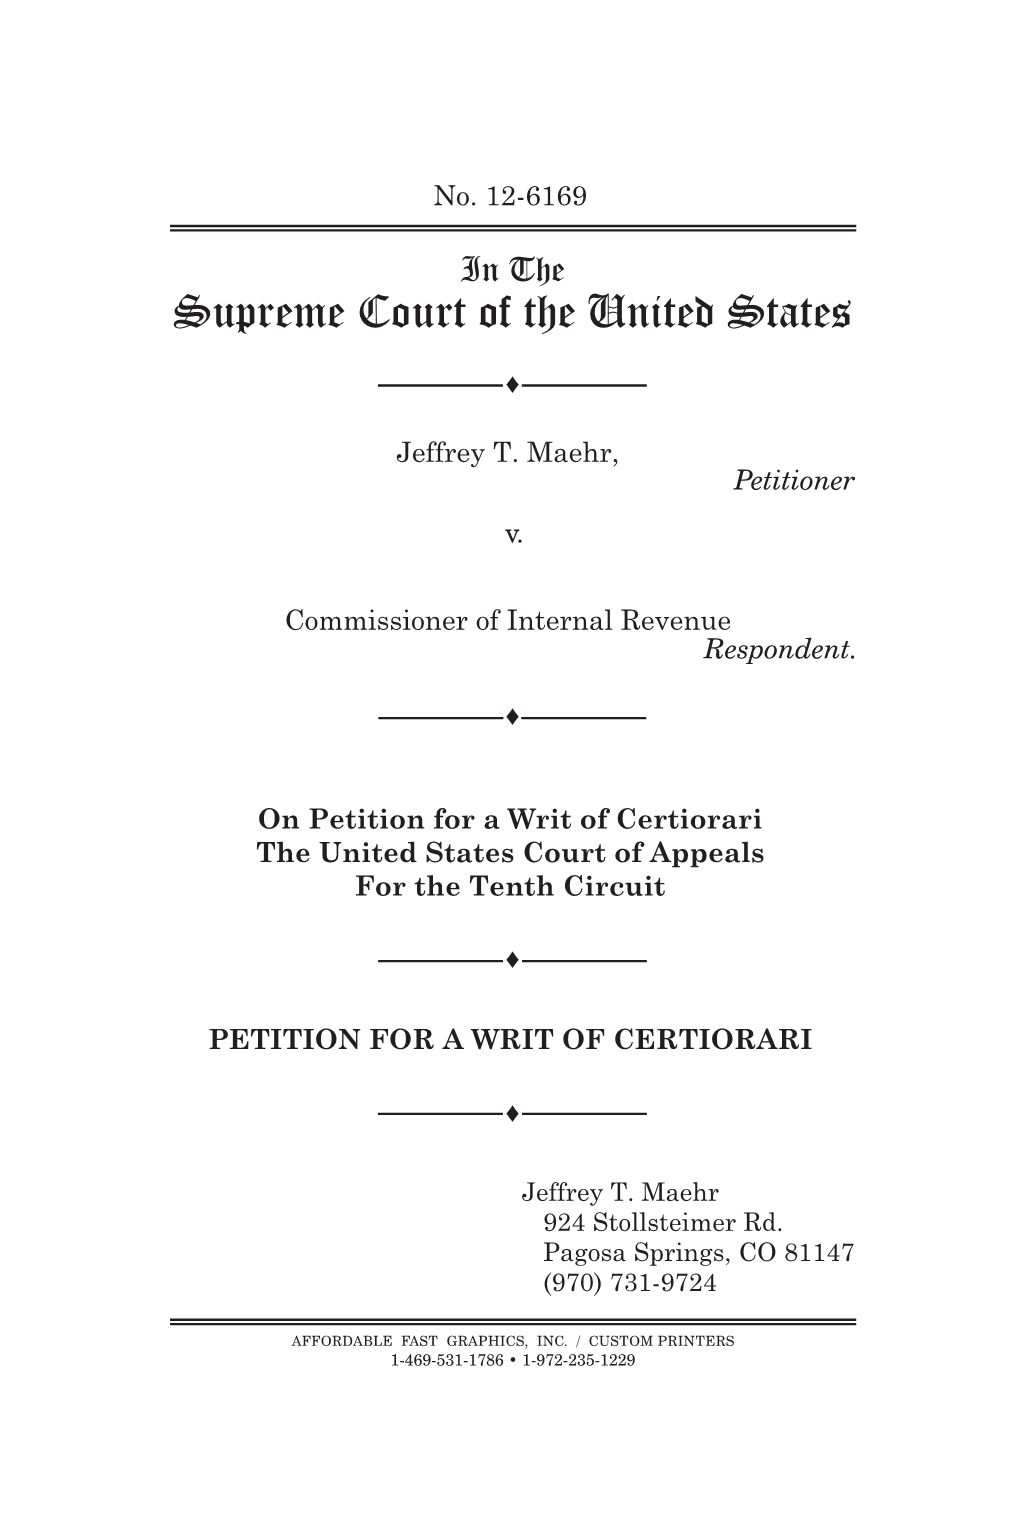 Jeffrey-T-Maehr-V-IRS-Supreme Court